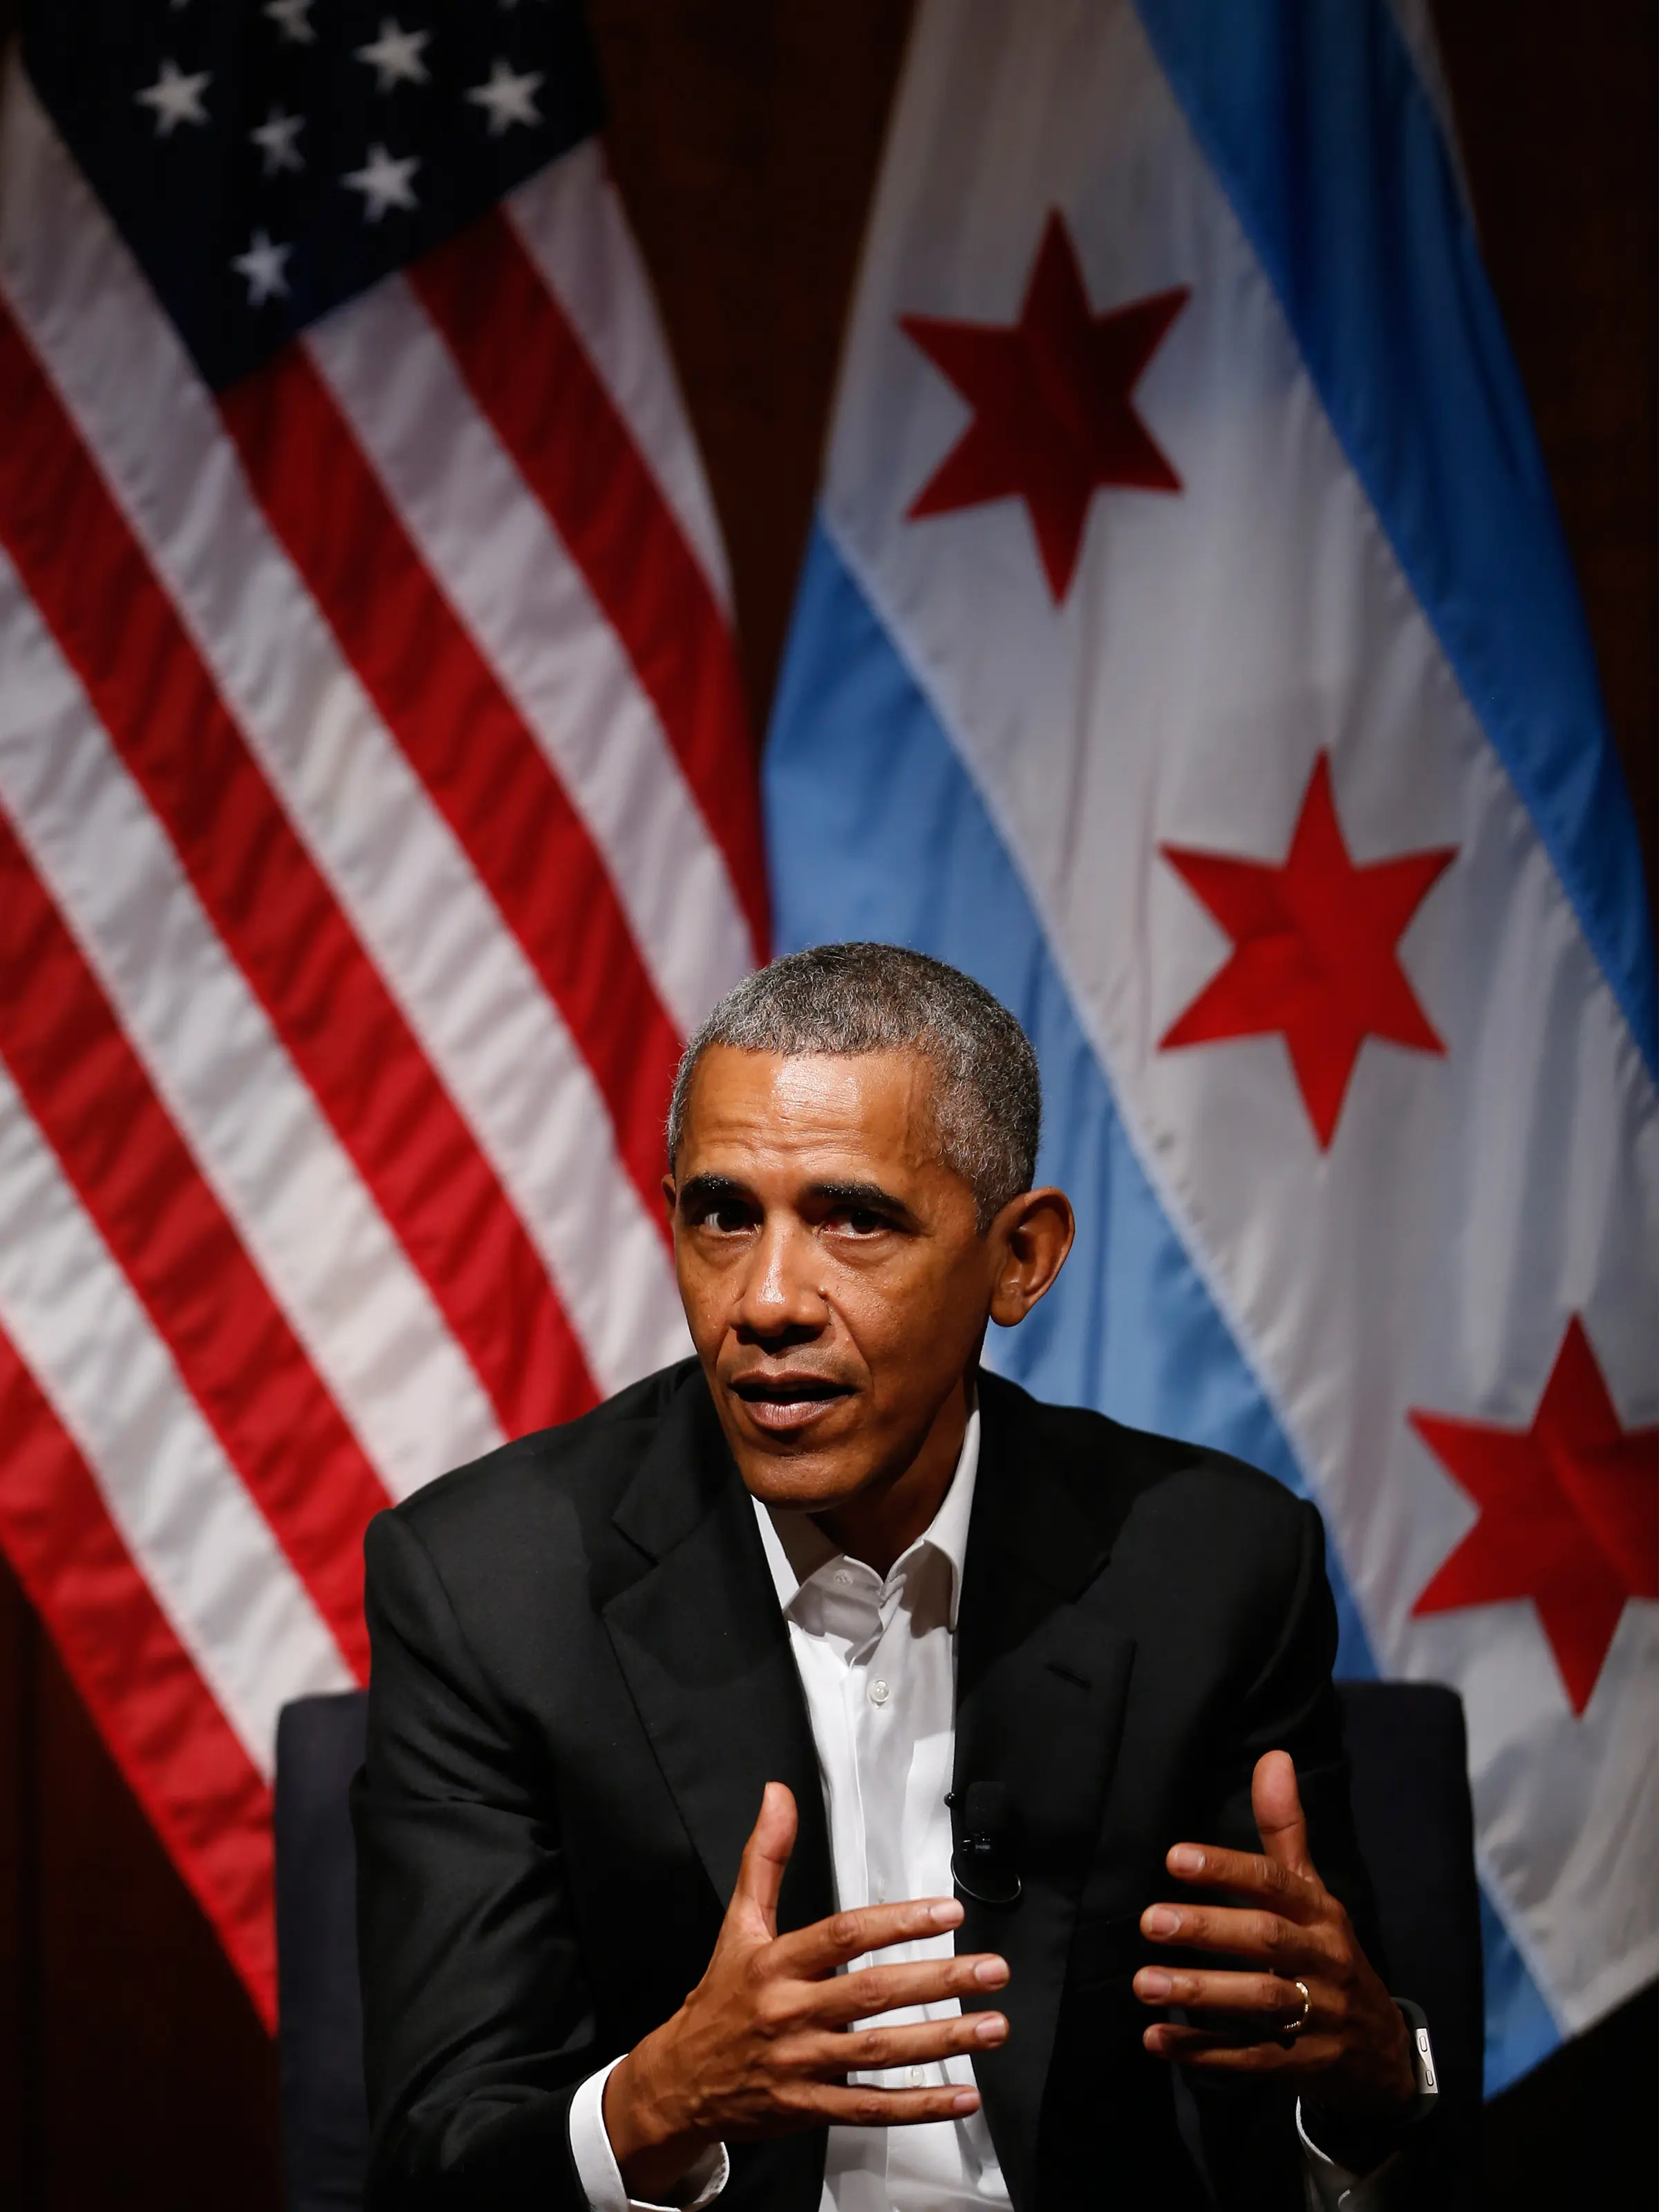 Mantan Presiden AS Barack Obama berbicara di sebuah forum yang membahas pengorganisasian masyarakat di University of Chicago di Chicago (24/4). Forum itu diikuti oleh pelajar dan mahasiswa peminat politik dari wilayah Chicago. (AFP Photo/ Jim Young)